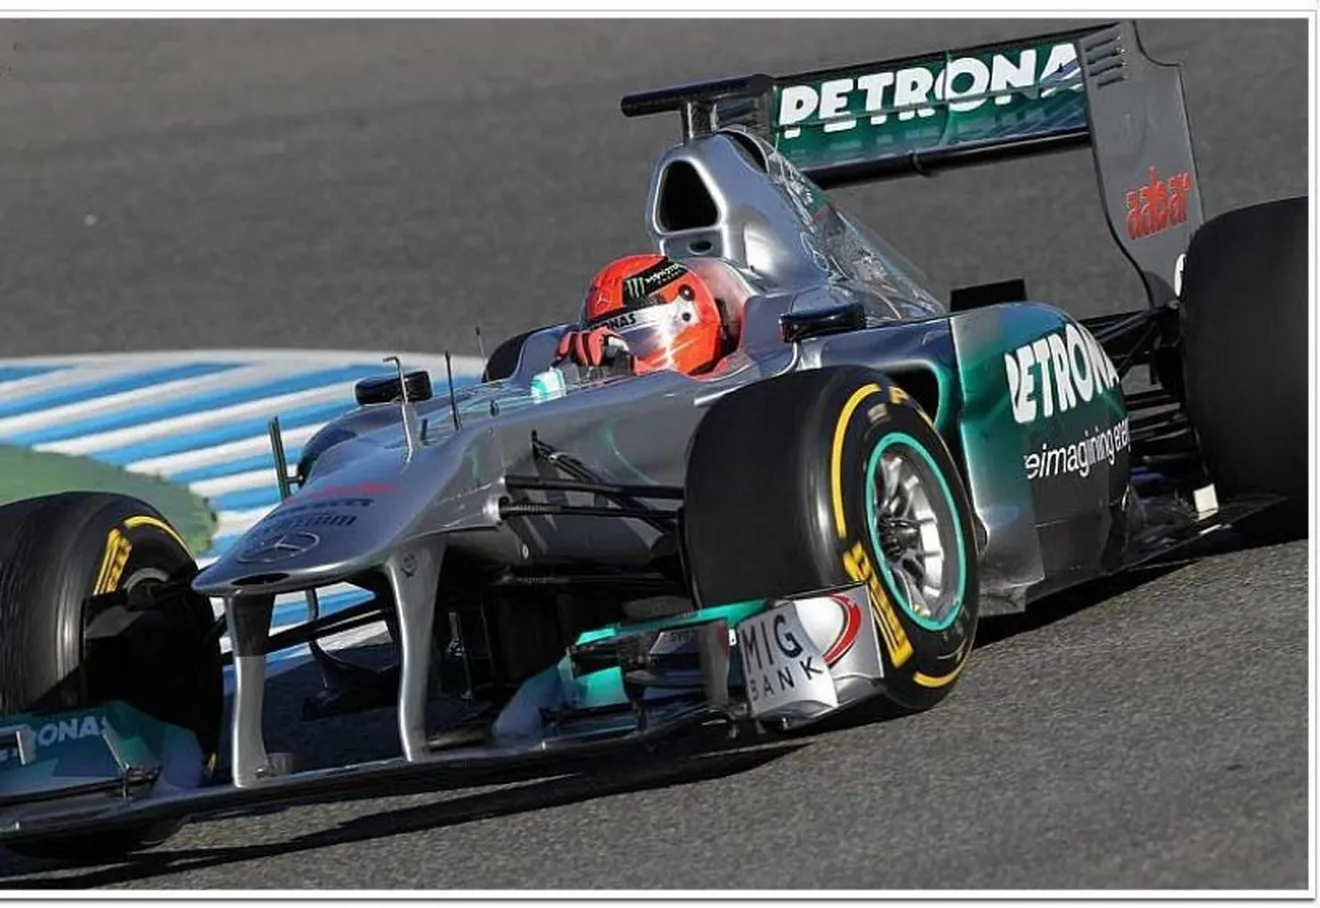 Tests Pretemporada Jerez 7-10 febrero. Día 2. Schumi el más rápido